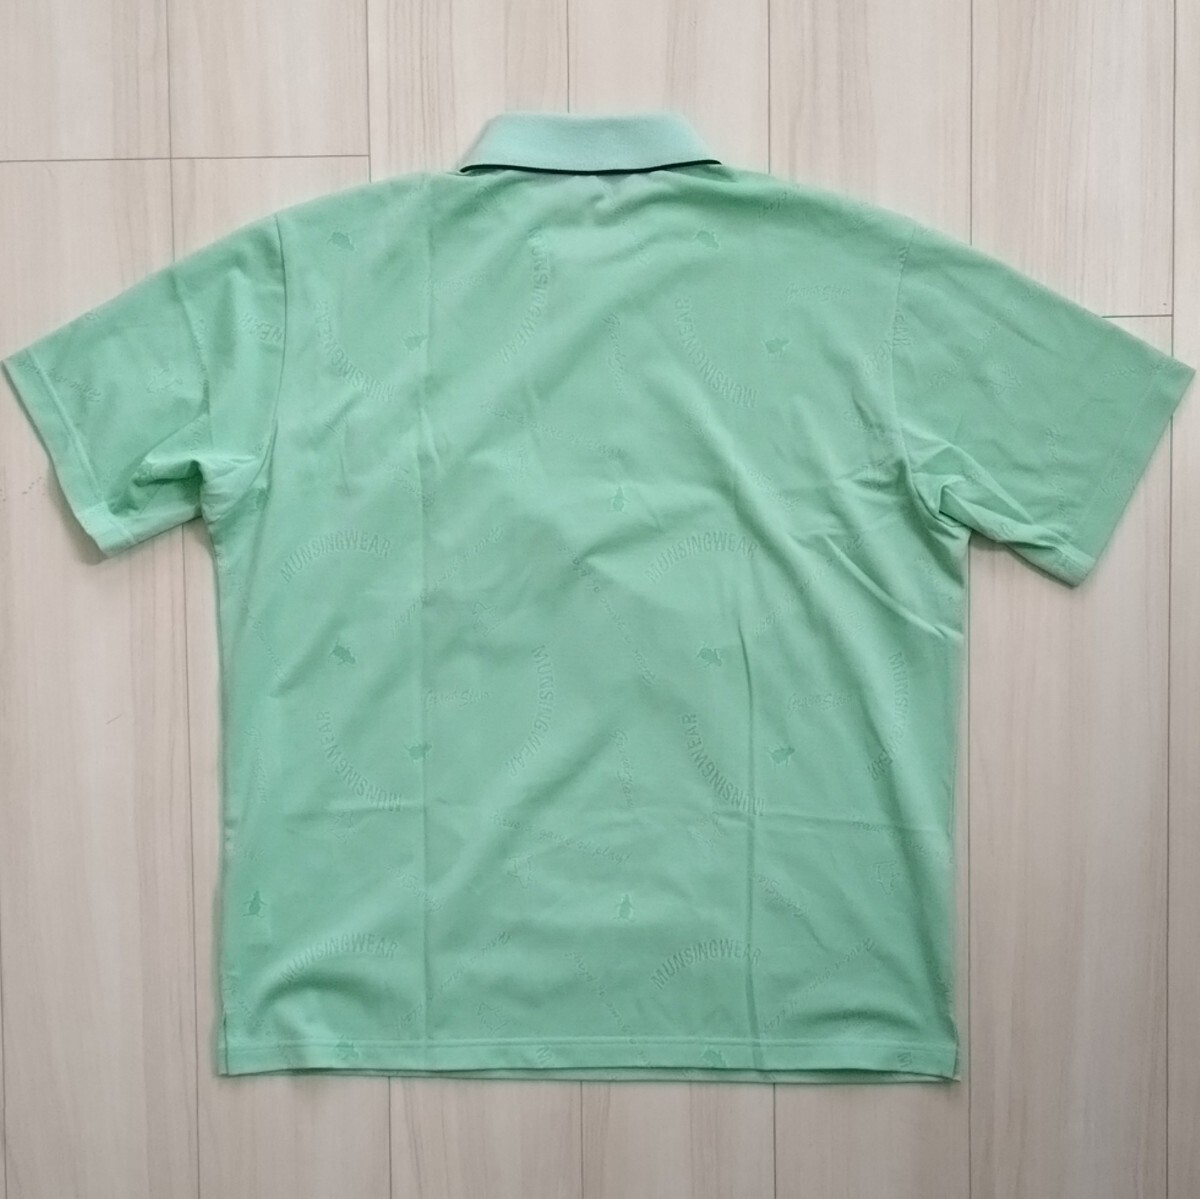  new goods Munsingwear wear polo-shirt LL men's O short sleeves shirt Munsingwear Golf Descente 